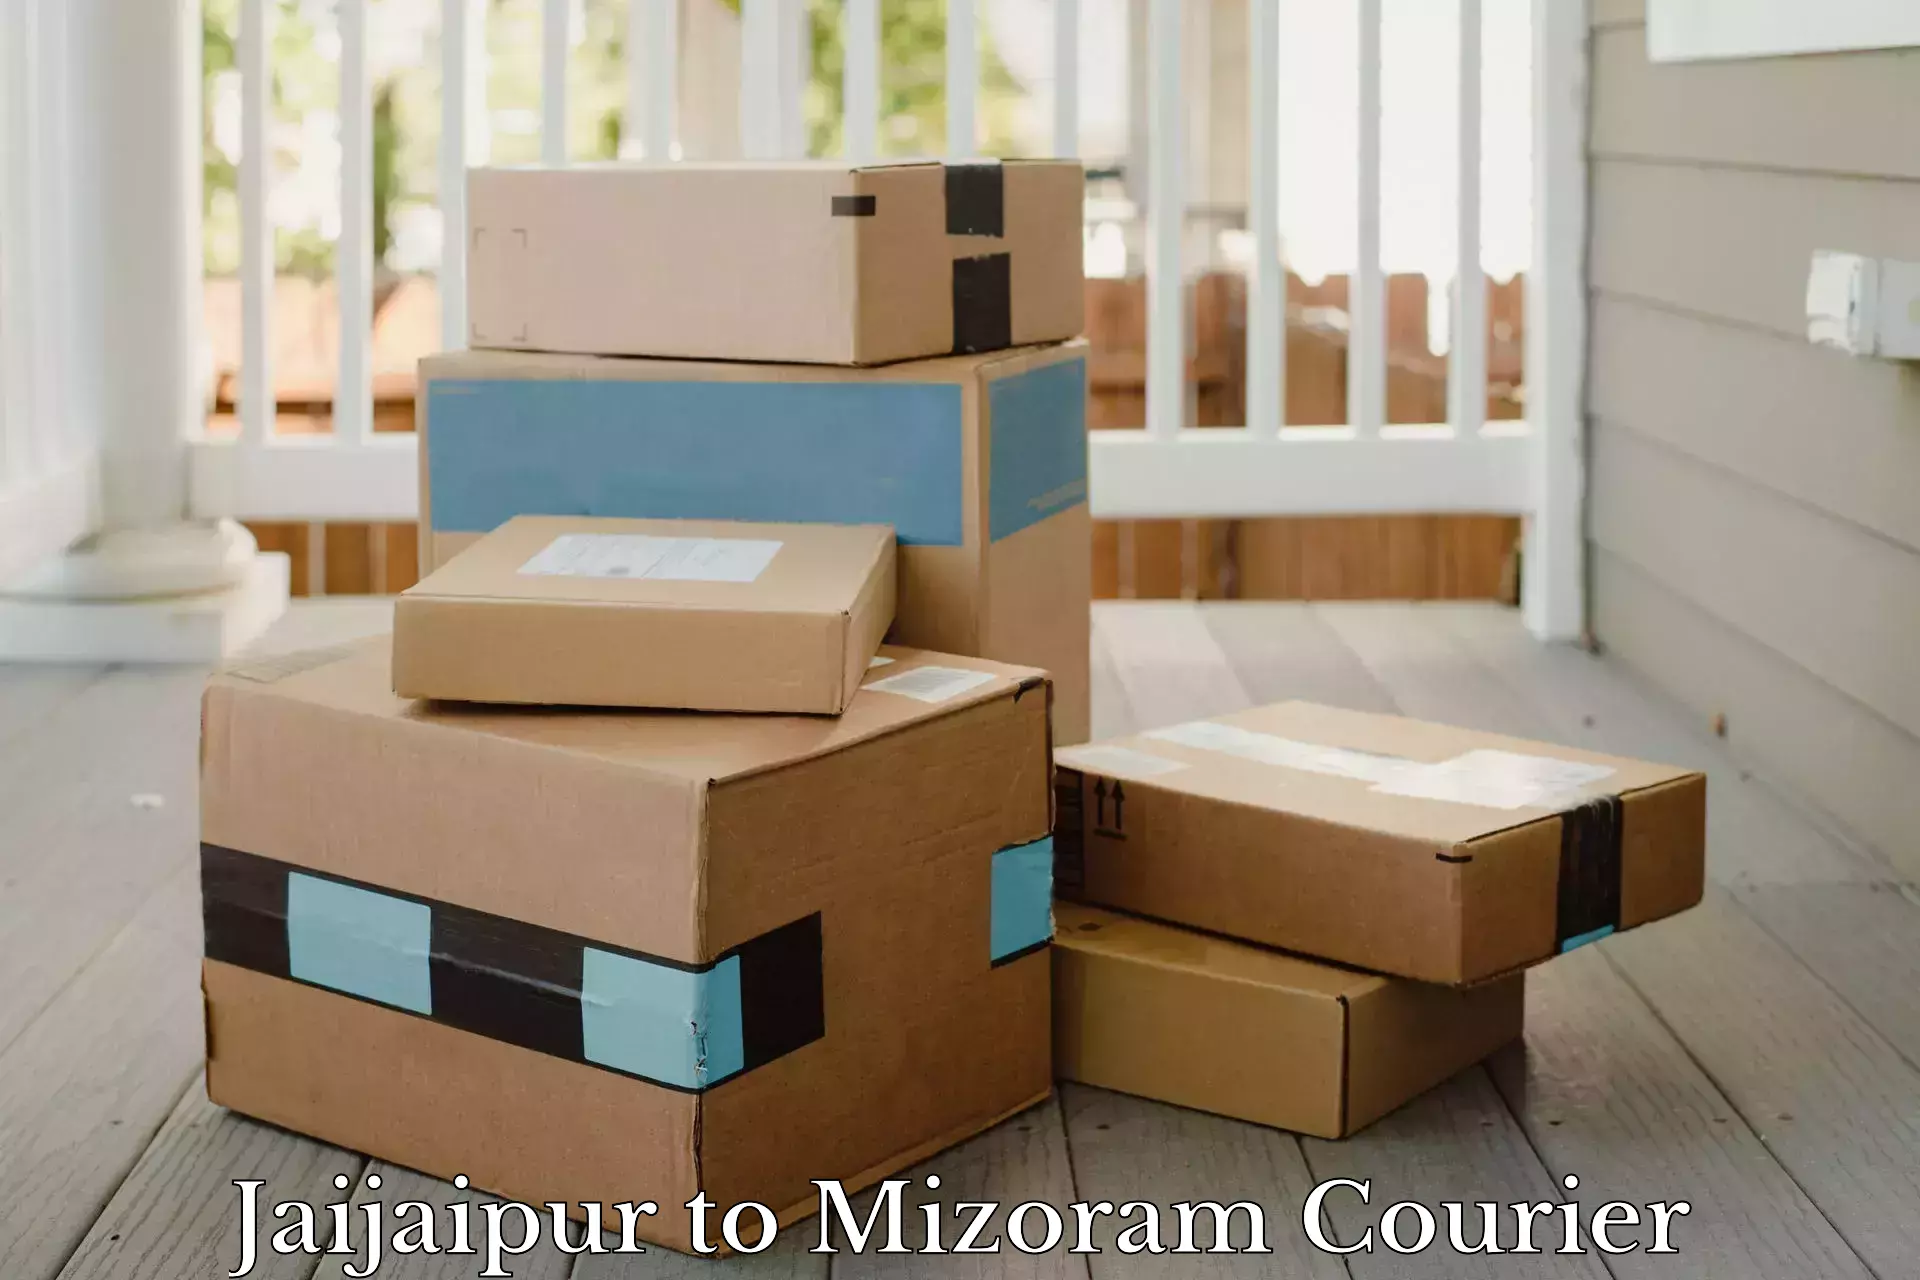 High-capacity parcel service Jaijaipur to Mizoram